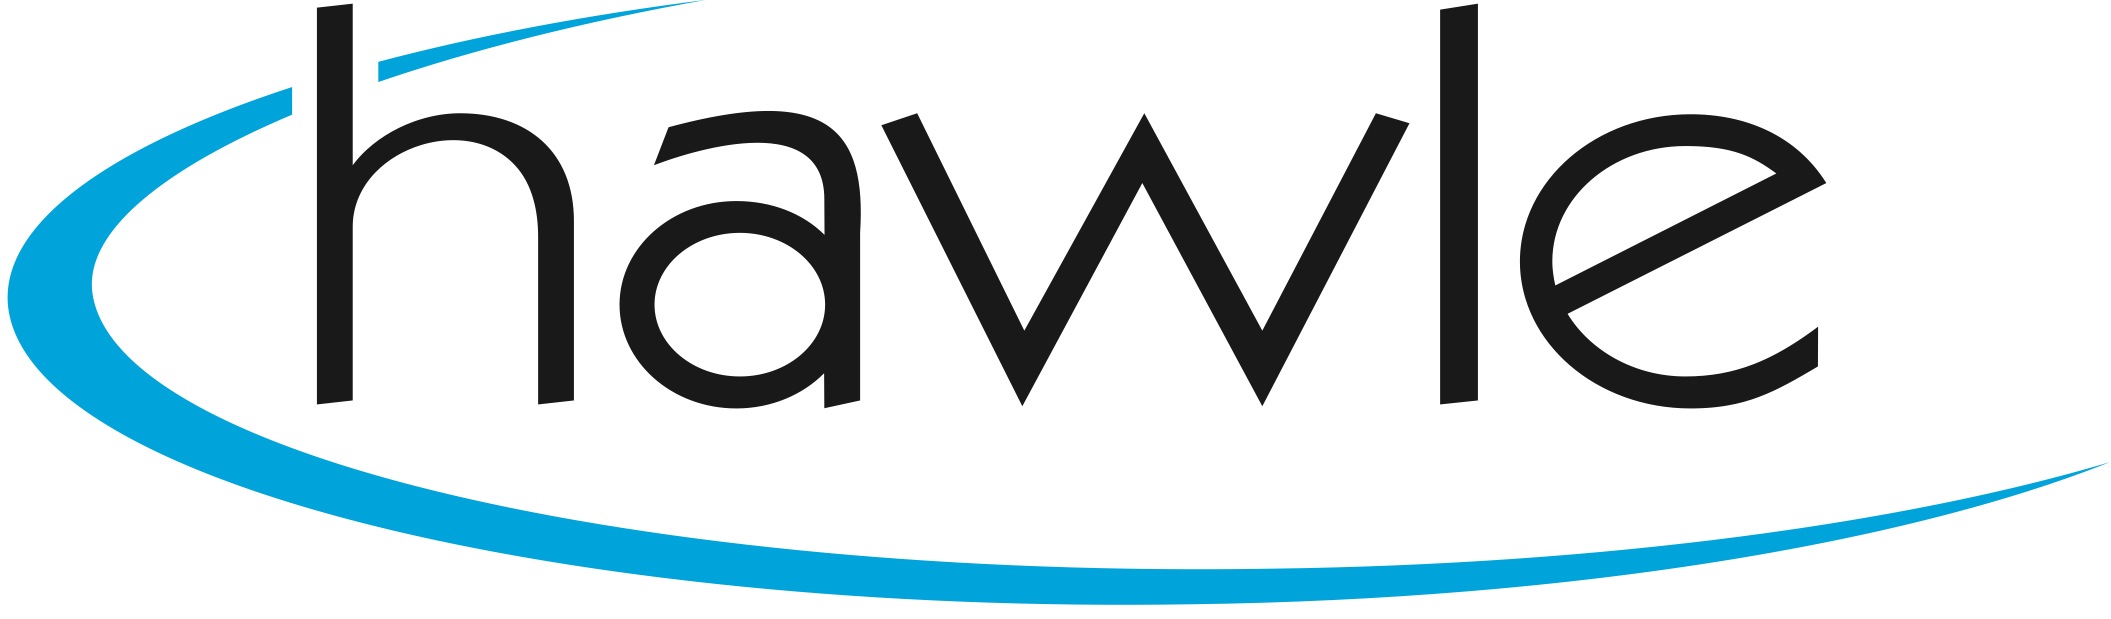 Logo Hawle